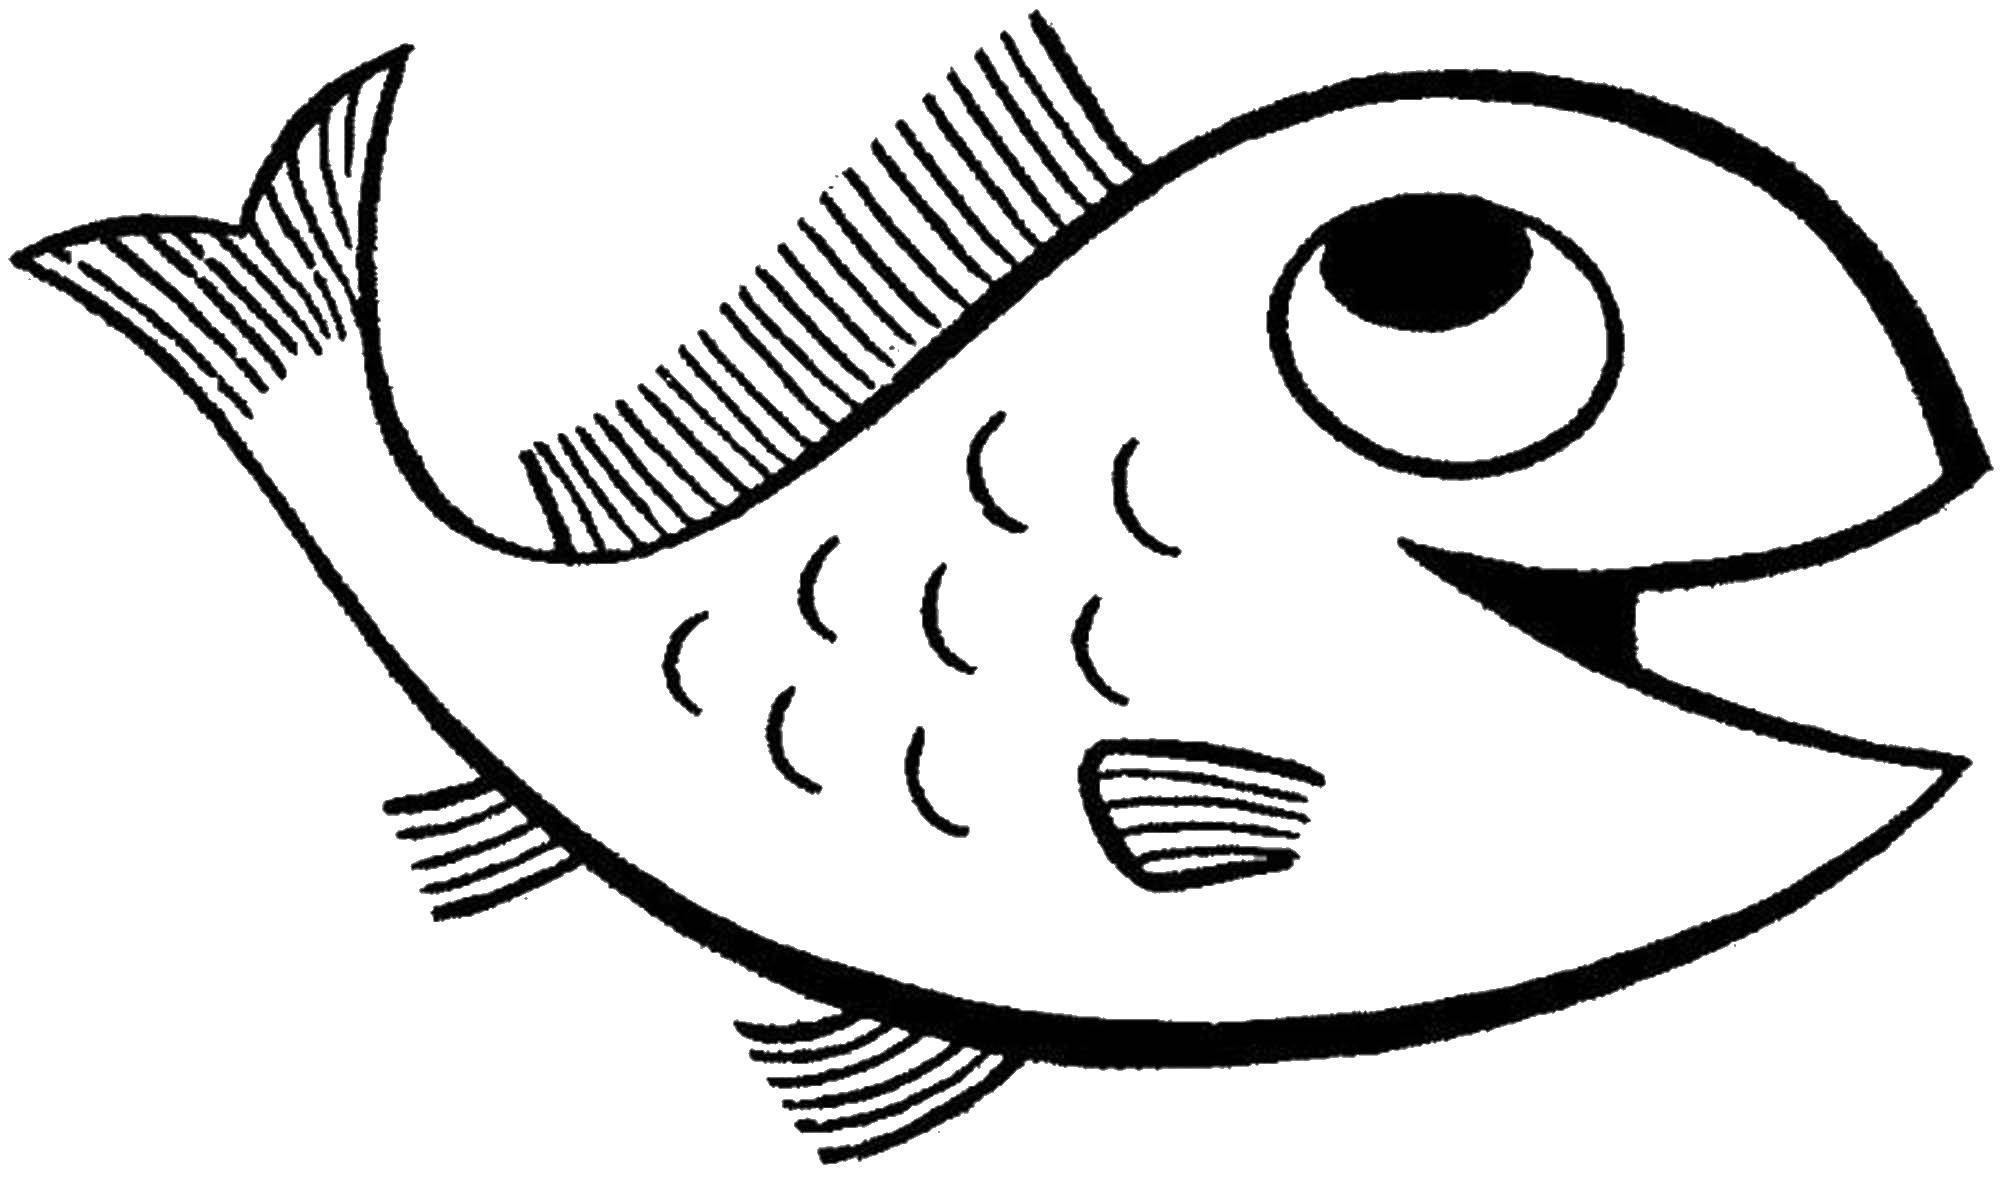 Coloring Fish. Category fish. Tags:  fish, sea.